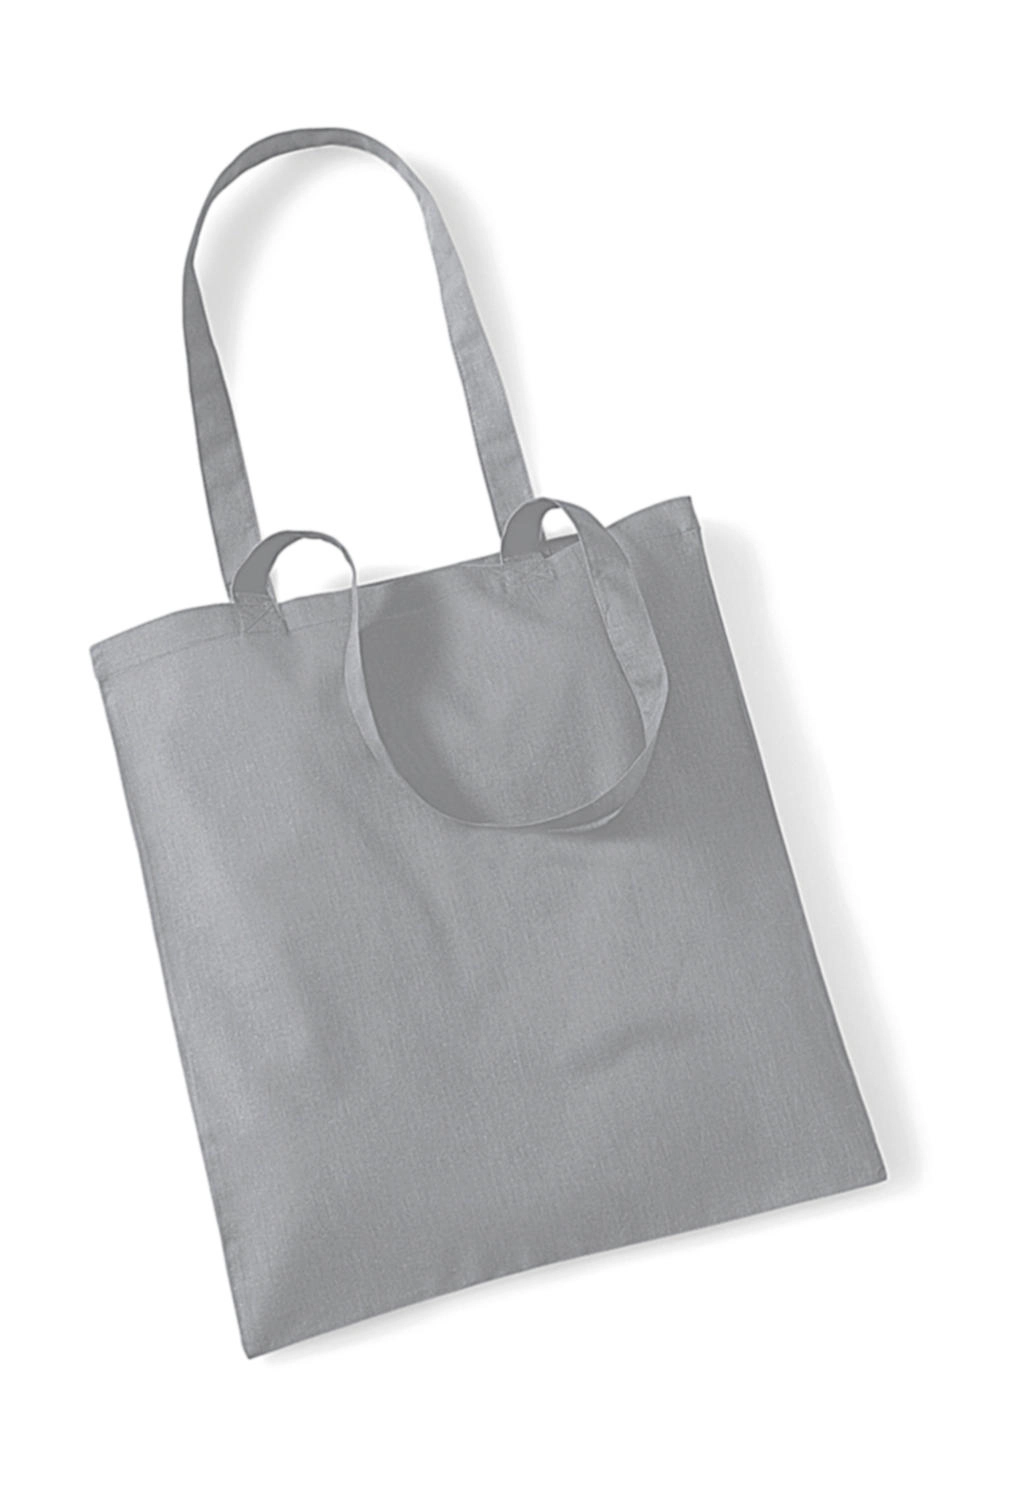 Bag for Life - Long Handles zum Besticken und Bedrucken in der Farbe Pure Grey mit Ihren Logo, Schriftzug oder Motiv.